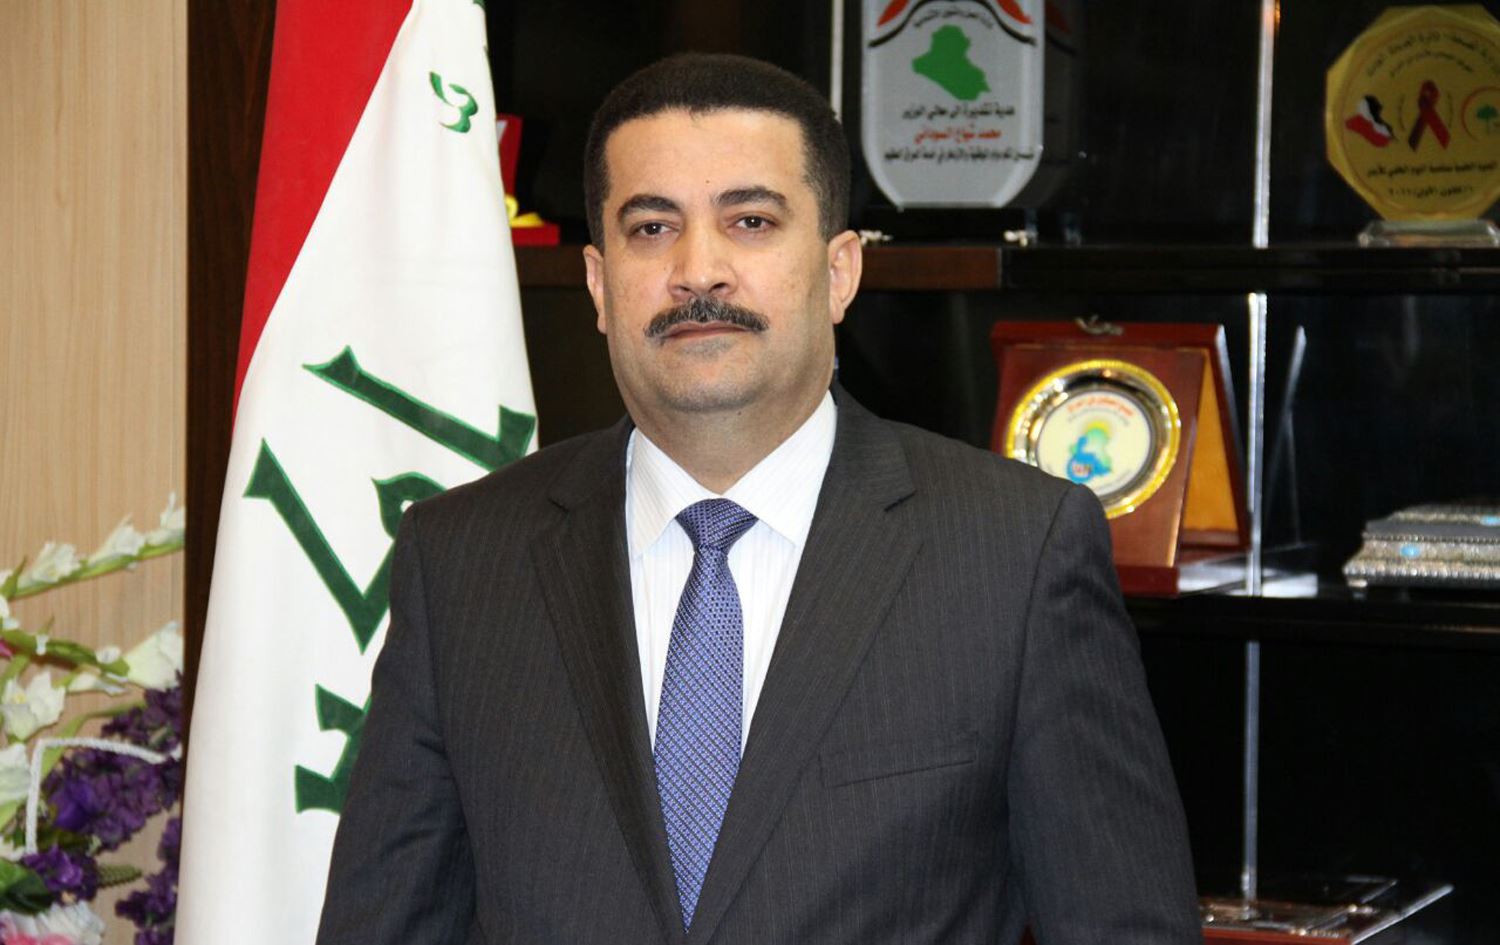 Mohammed Shia al-Sudani,nouveau Chef du gouvernement Irakien.